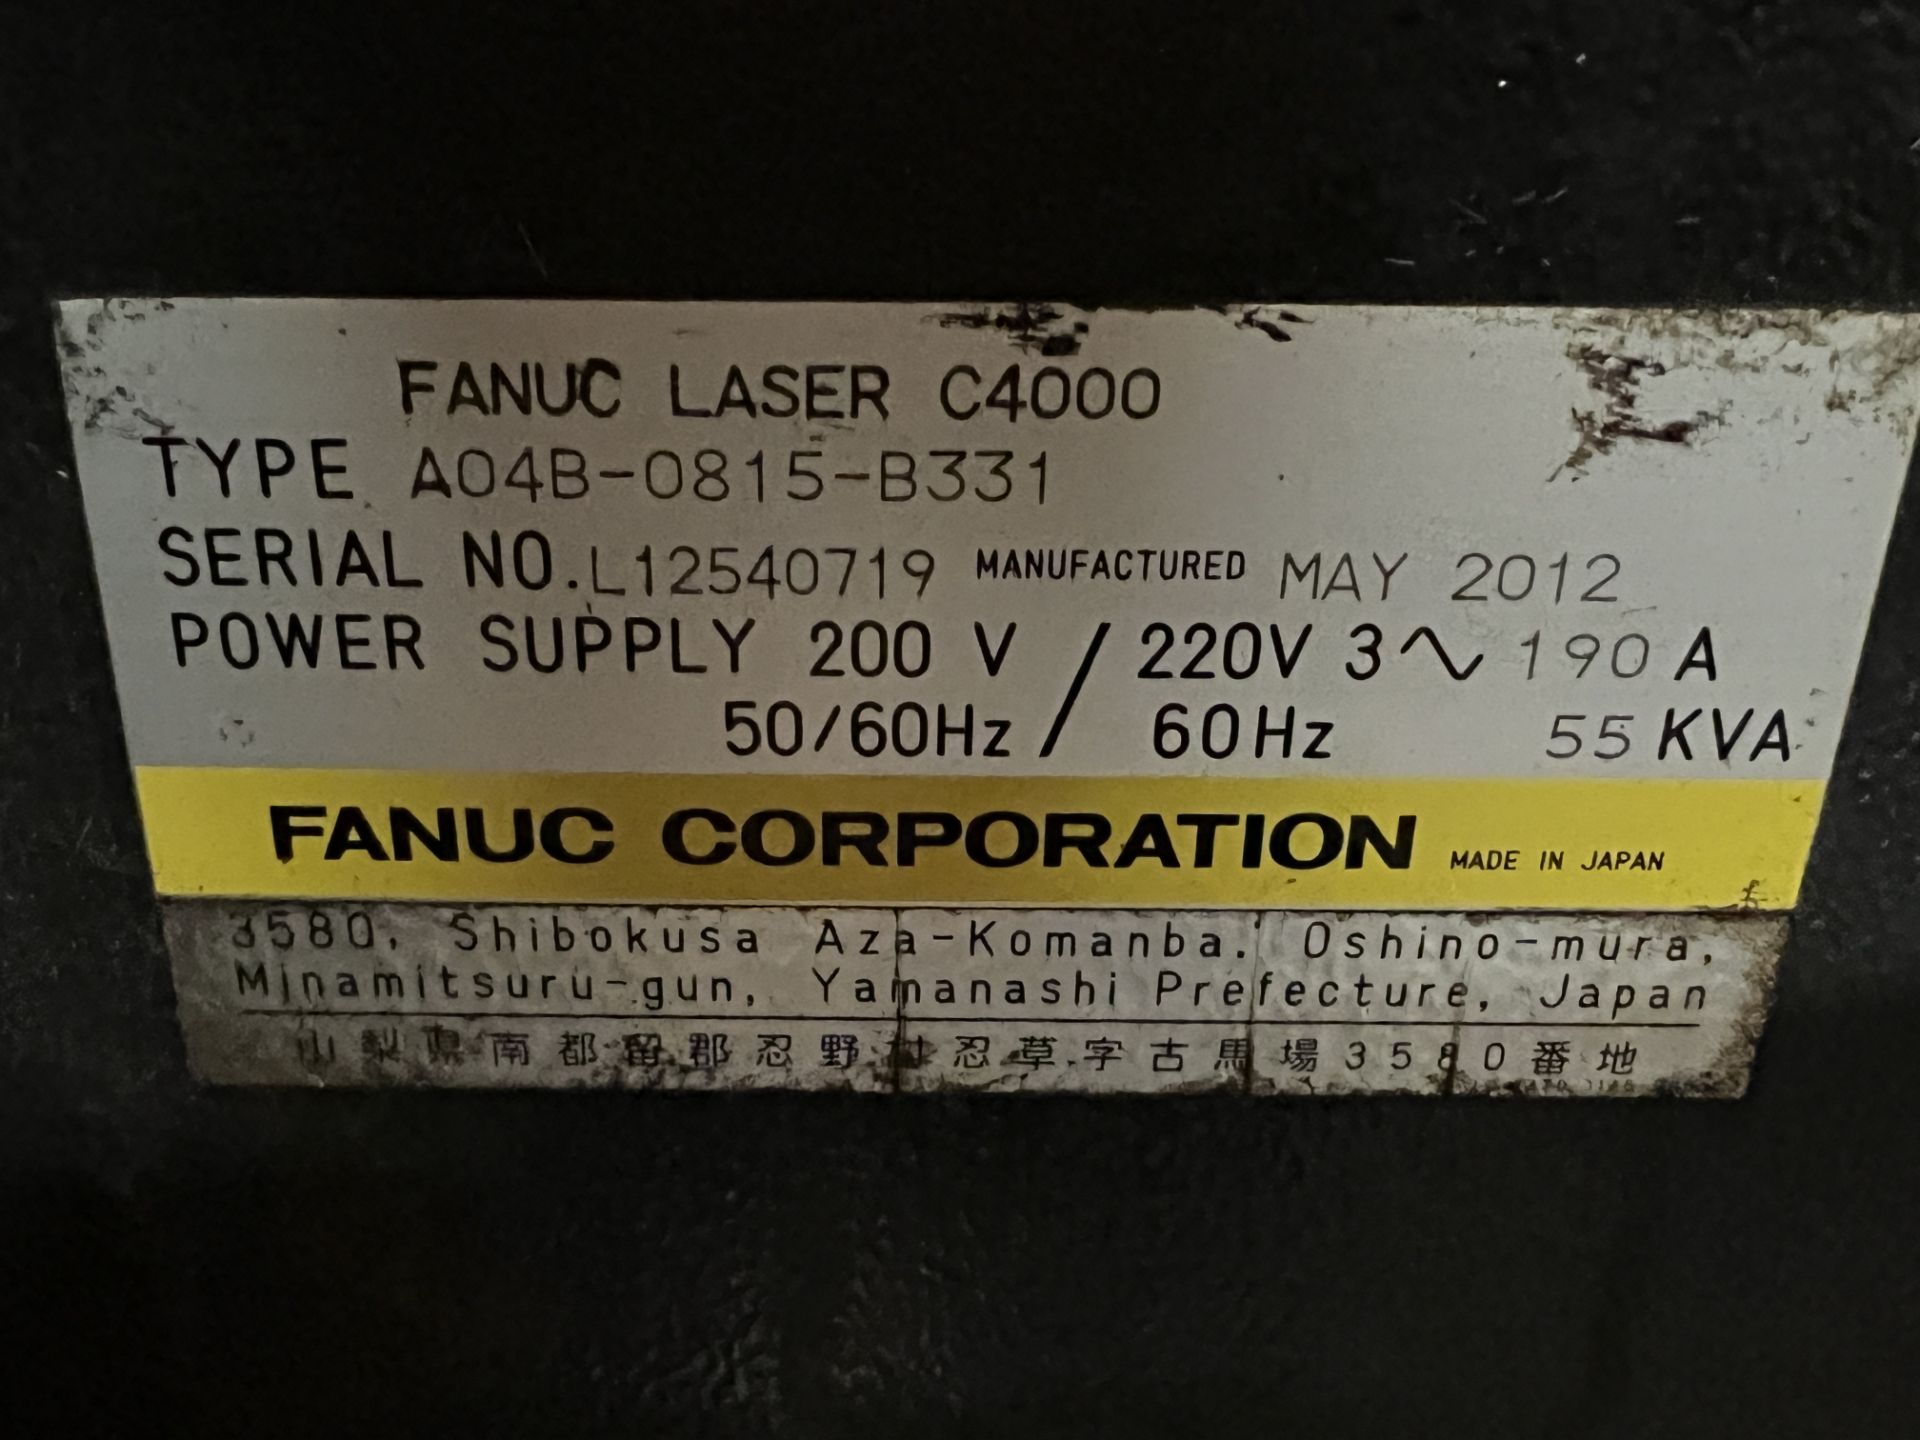 Amada FOM II 3015 NT 4,000 Watt CNC Laser Cutting System, S/N 47512411, 2012 - Image 26 of 26